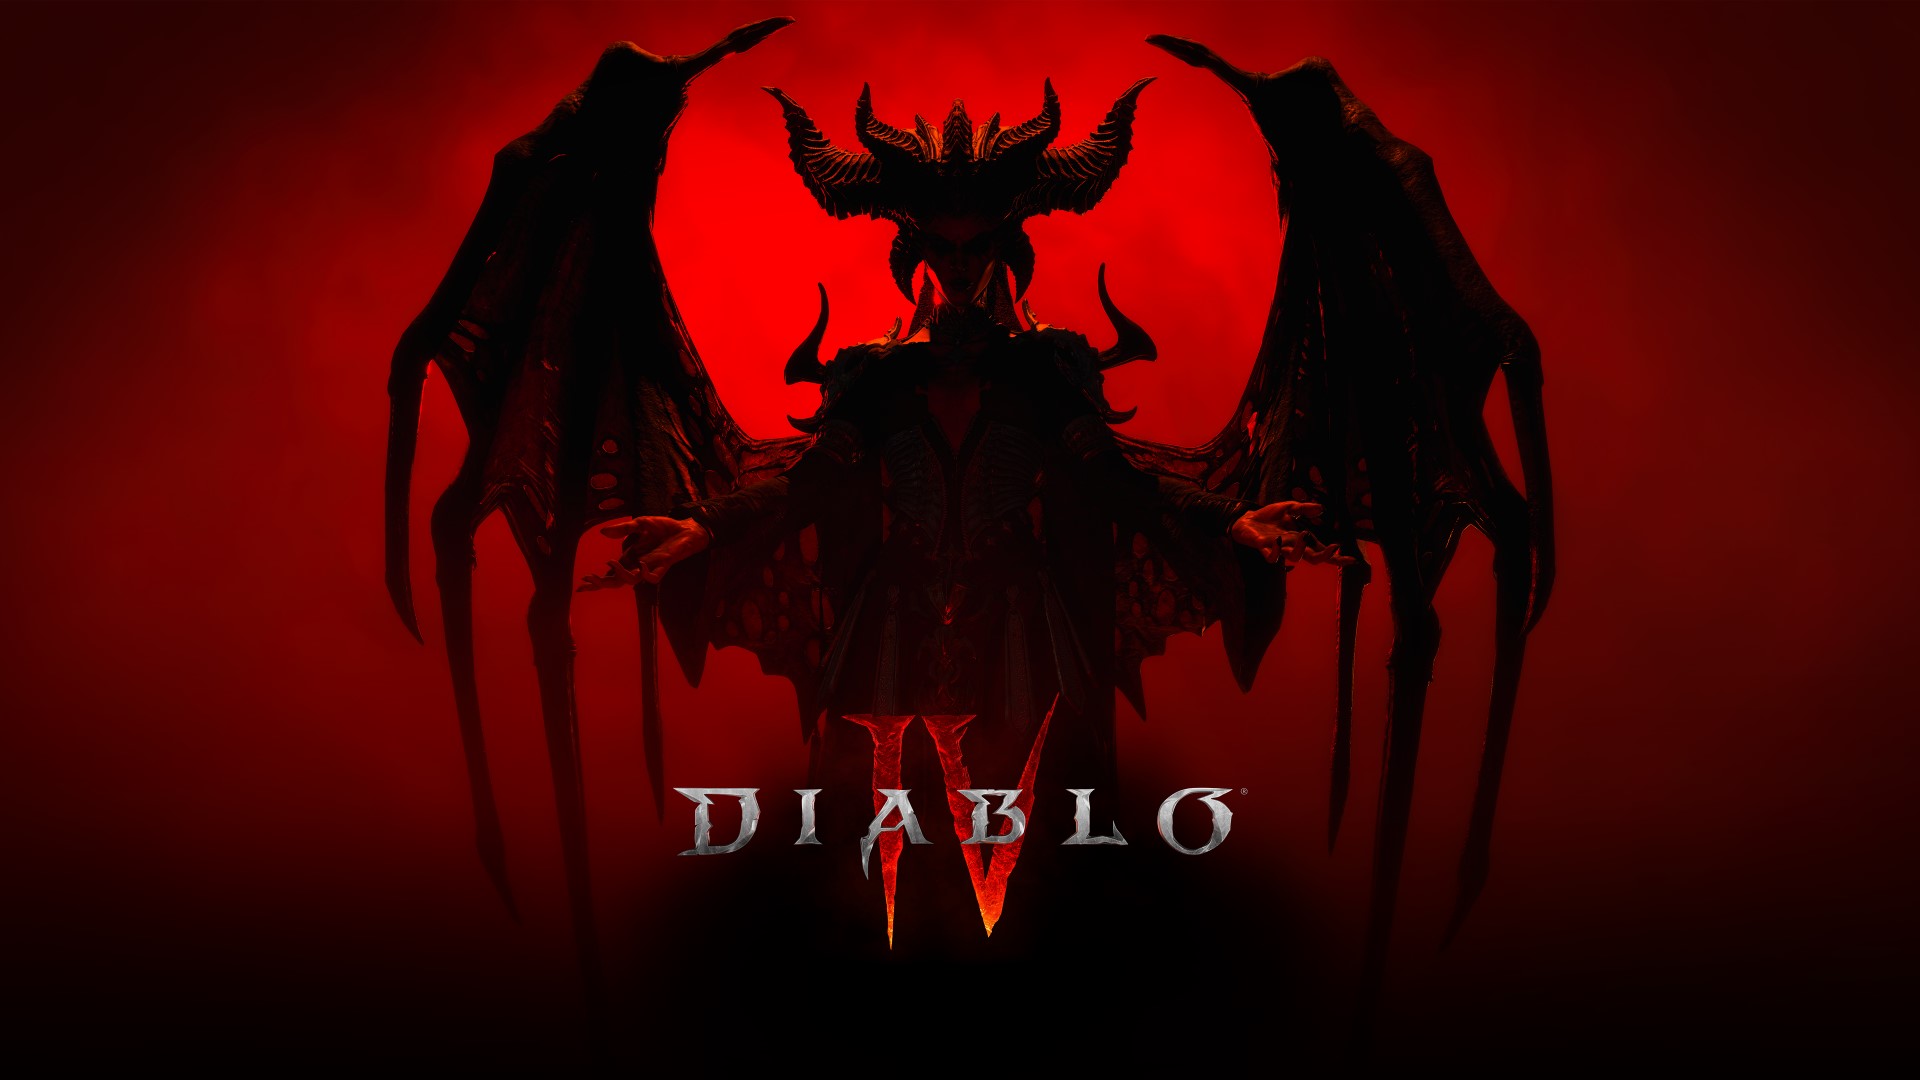 احتمال انتشار اطلاعات جدید از بازی Diablo 4 پیش از مراسم گیم اواردز امسال